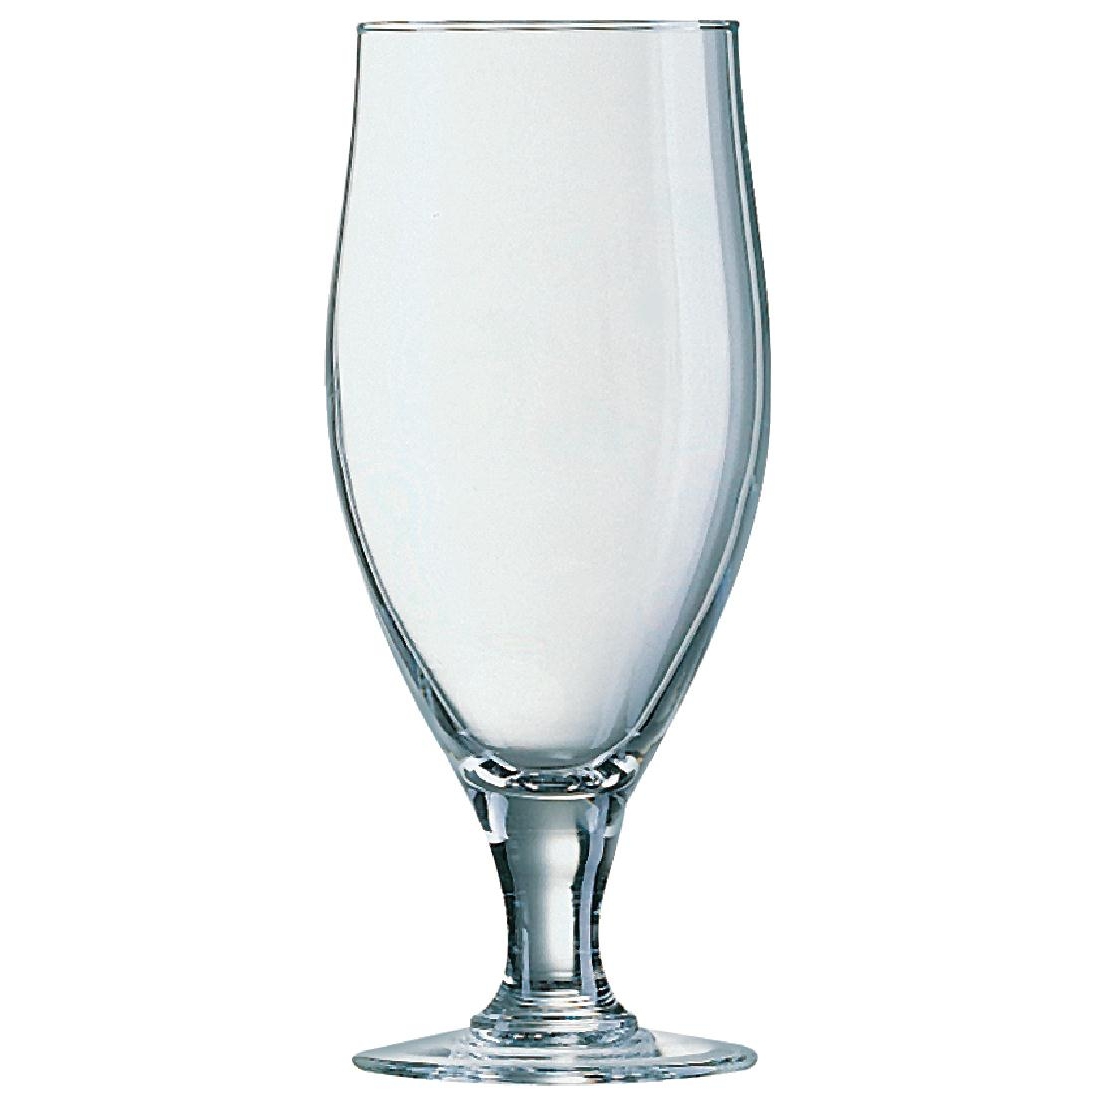 Arcoroc Cervoise Stemmed 2/3 Pint Beer Glasses 380ml CE Marked